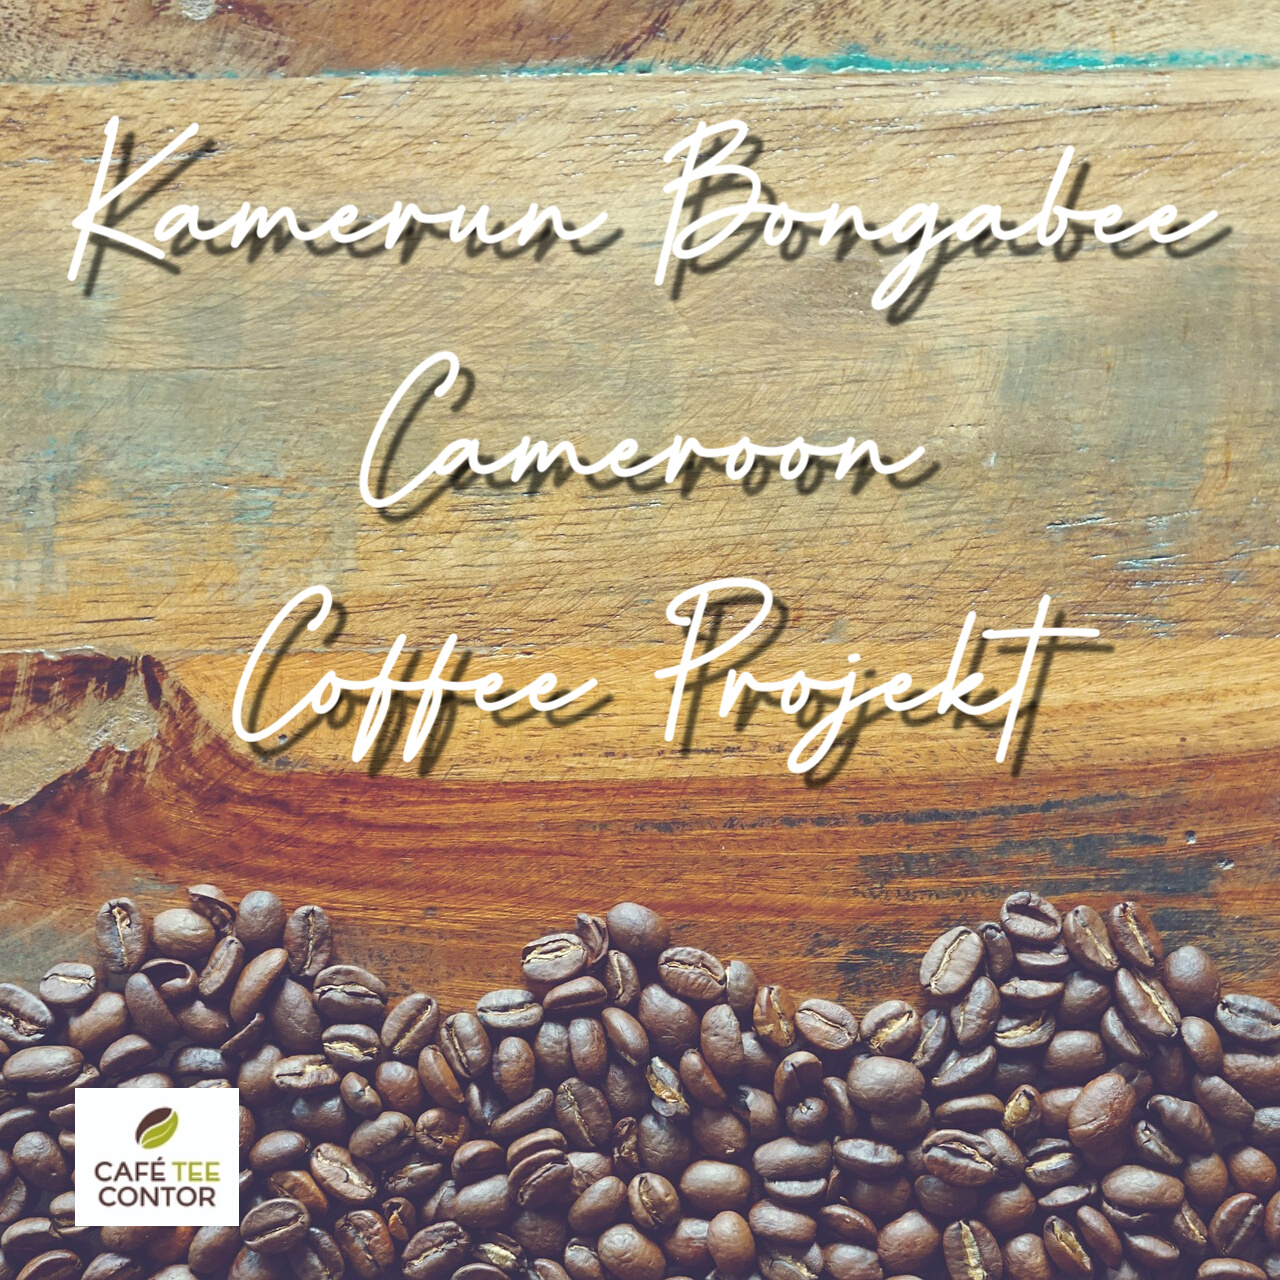 Kaffee Kamerun Bongabee - Cameroon Coffee Projekt